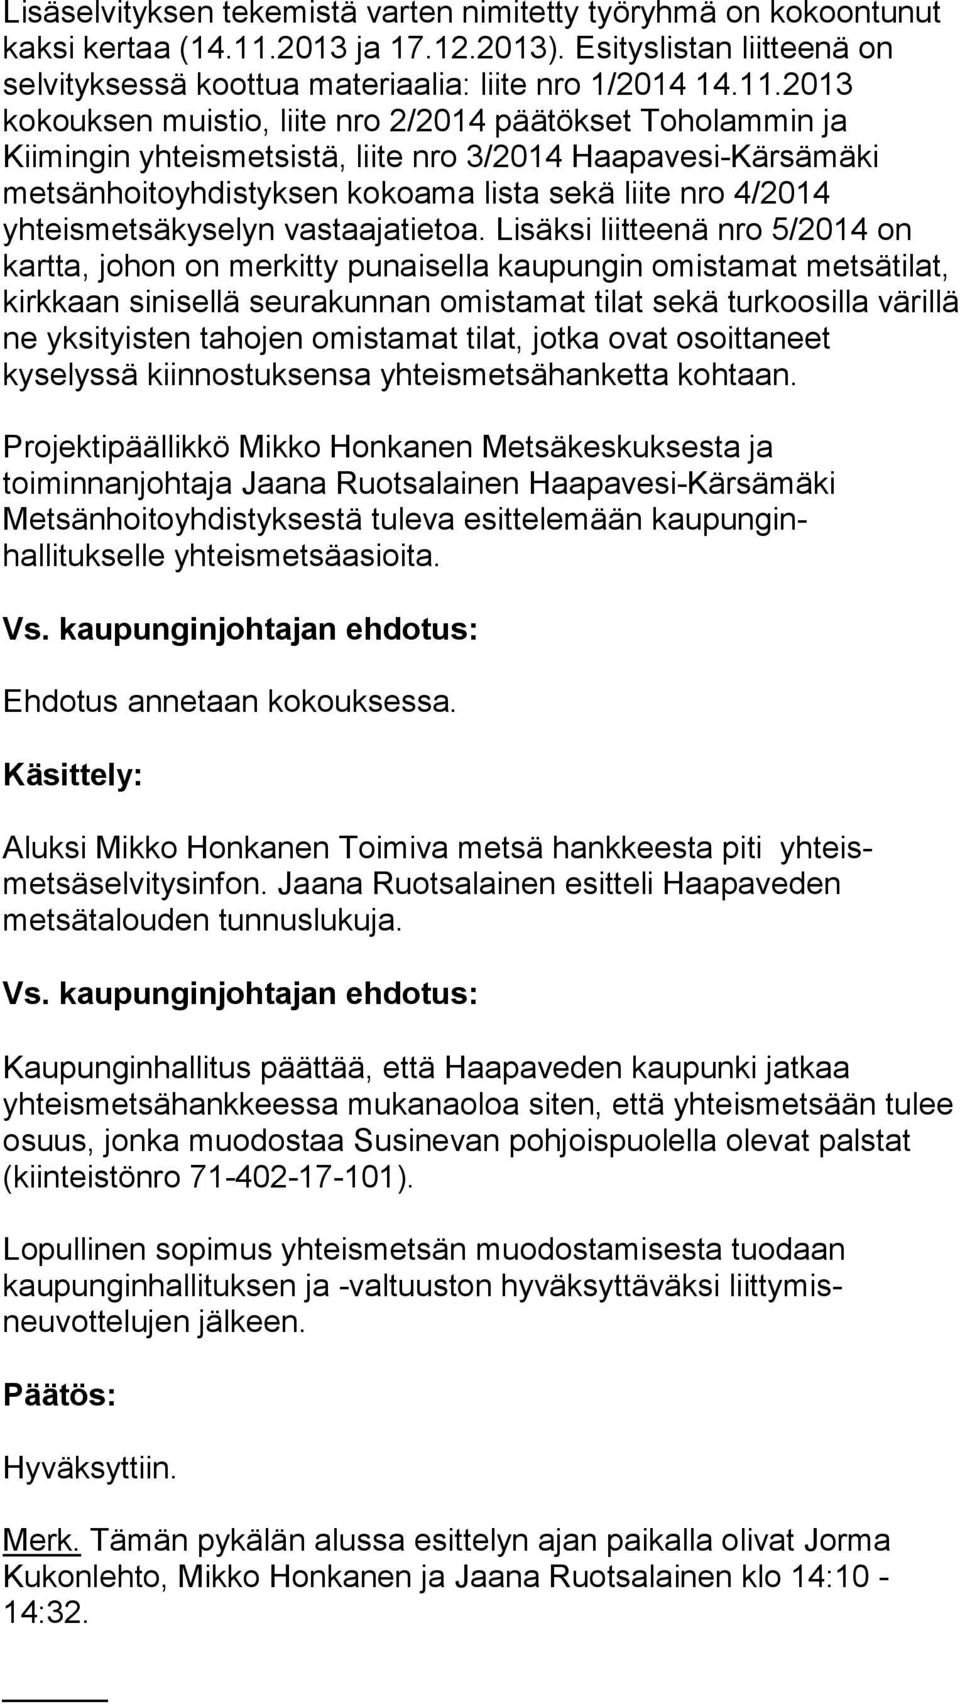 2013 kokouksen muistio, liite nro 2/2014 päätökset Toholammin ja Kiimingin yhteismetsistä, liite nro 3/2014 Haapavesi-Kärsämäki metsänhoitoyhdistyksen kokoama lista sekä liite nro 4/2014